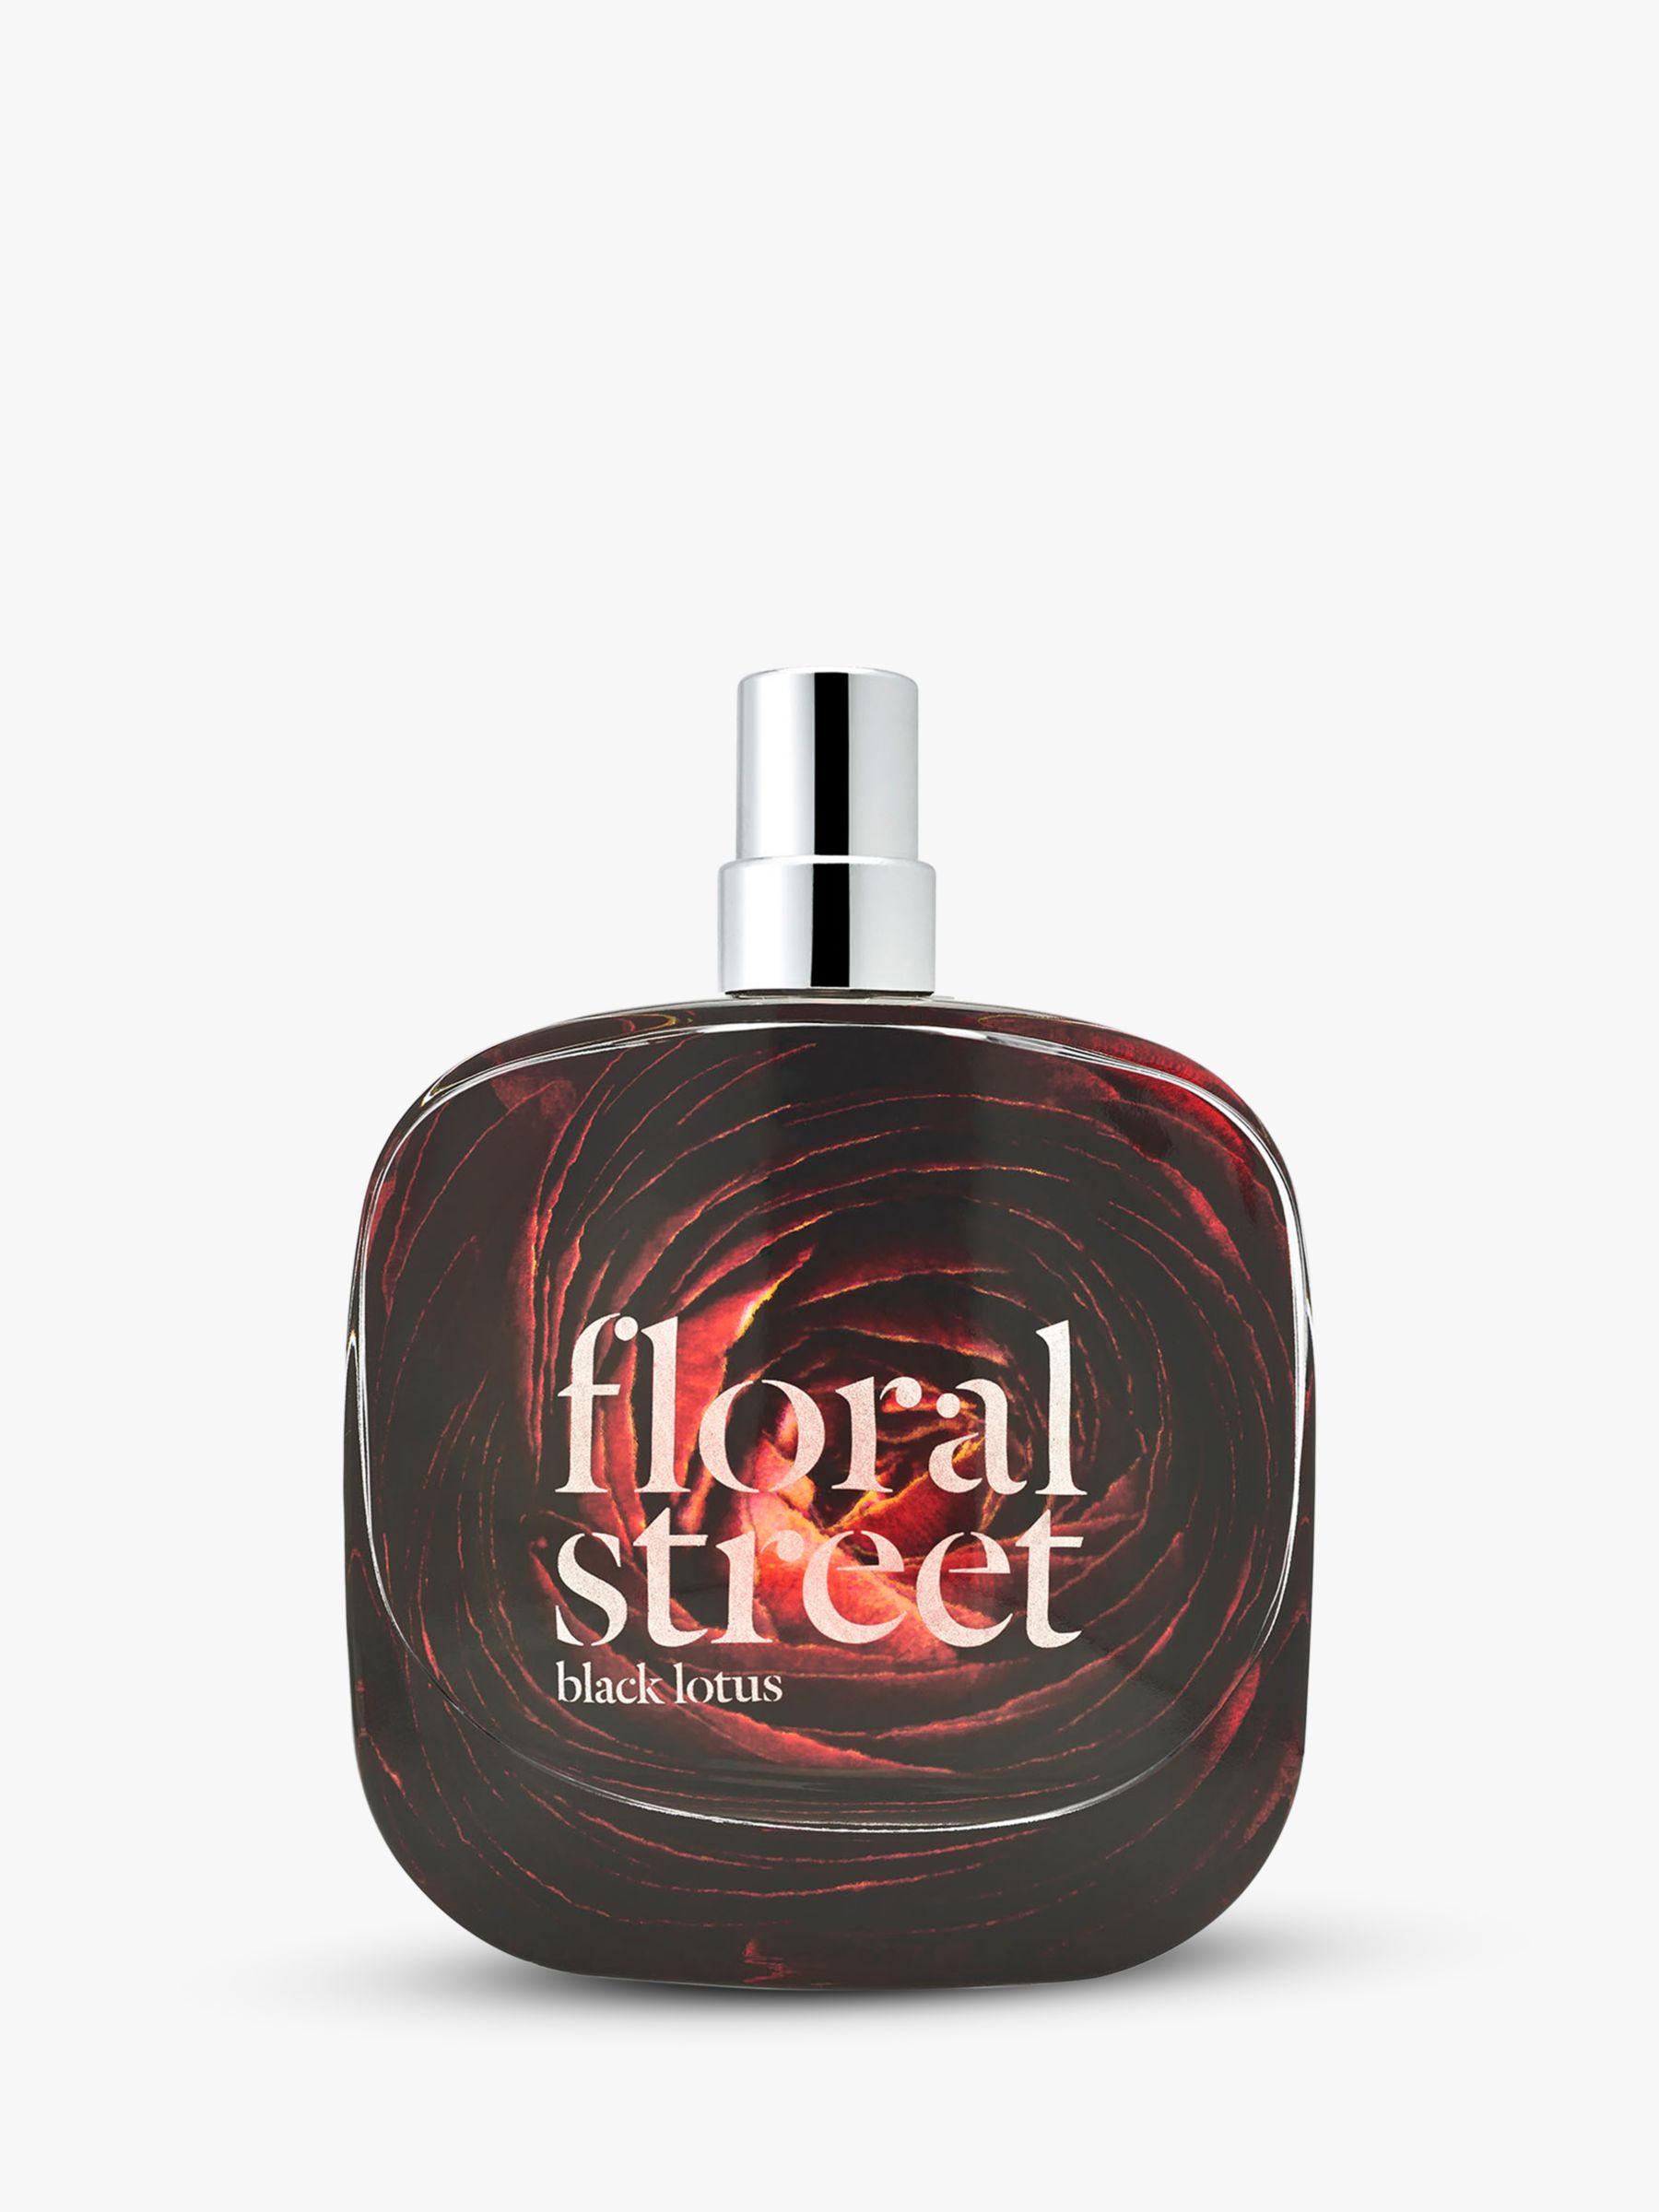 Floral Street Black Lotus Eau de Parfum, 50ml at John Lewis & Partners